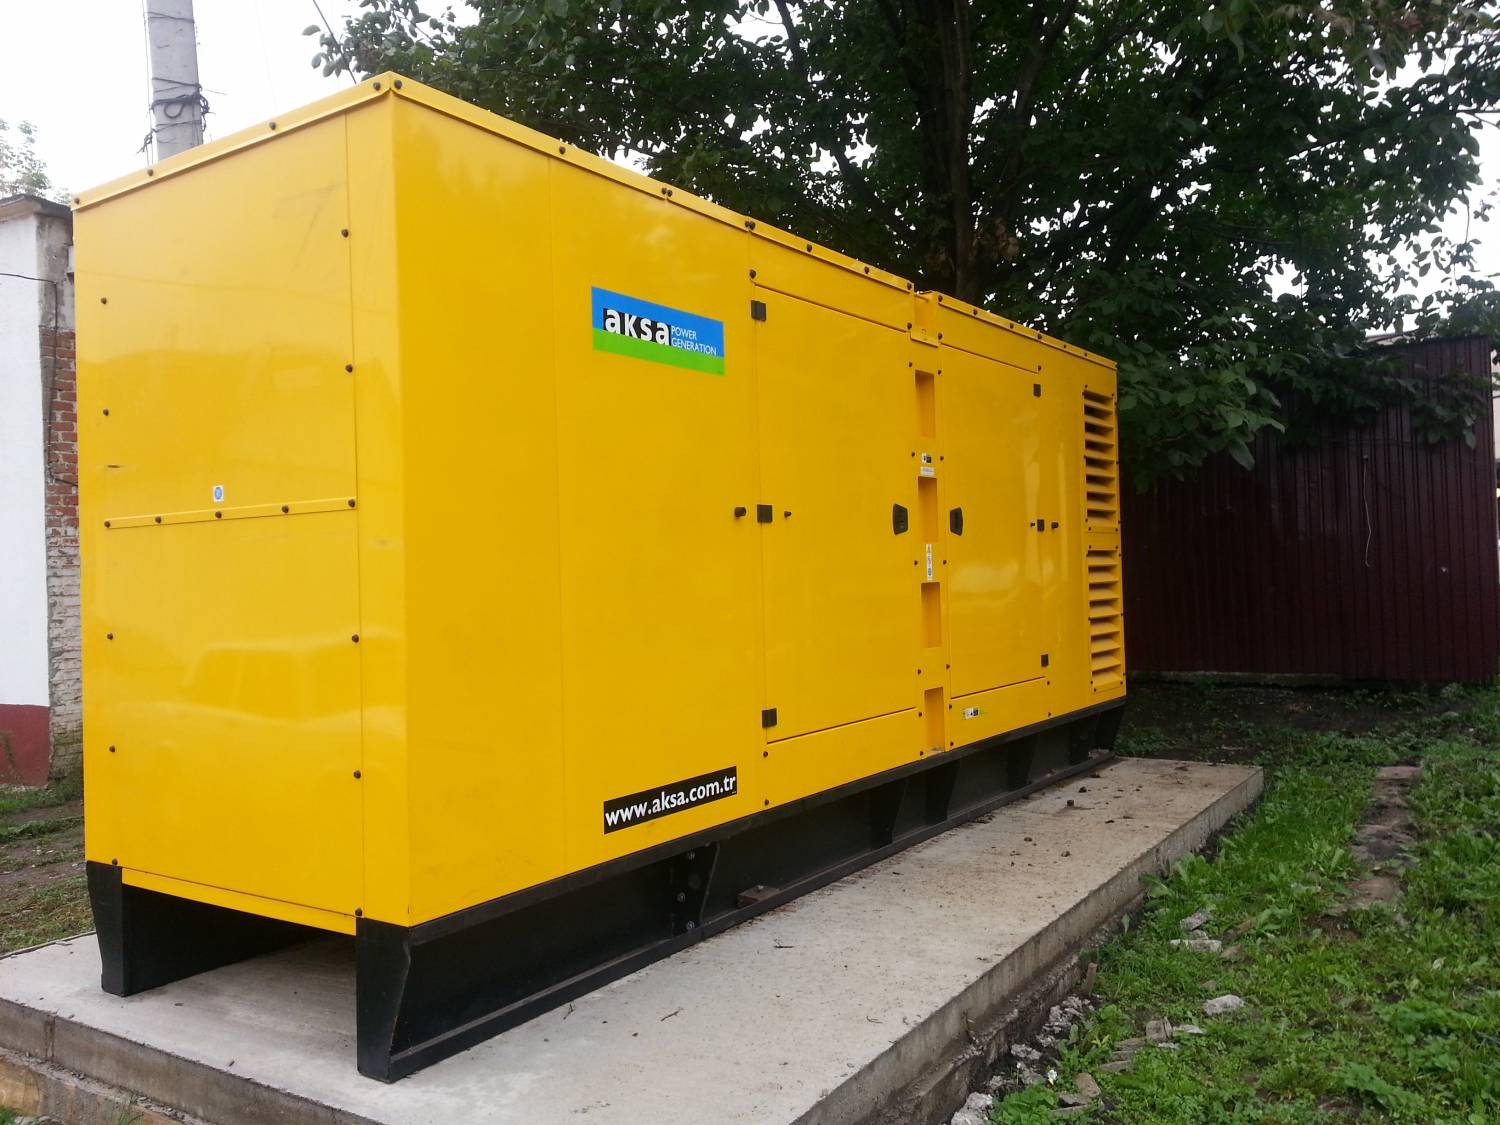 В Ингушской республиканской клинической больнице (ИРКБ) установлен дизель-генератор мощностью 620 кВт.